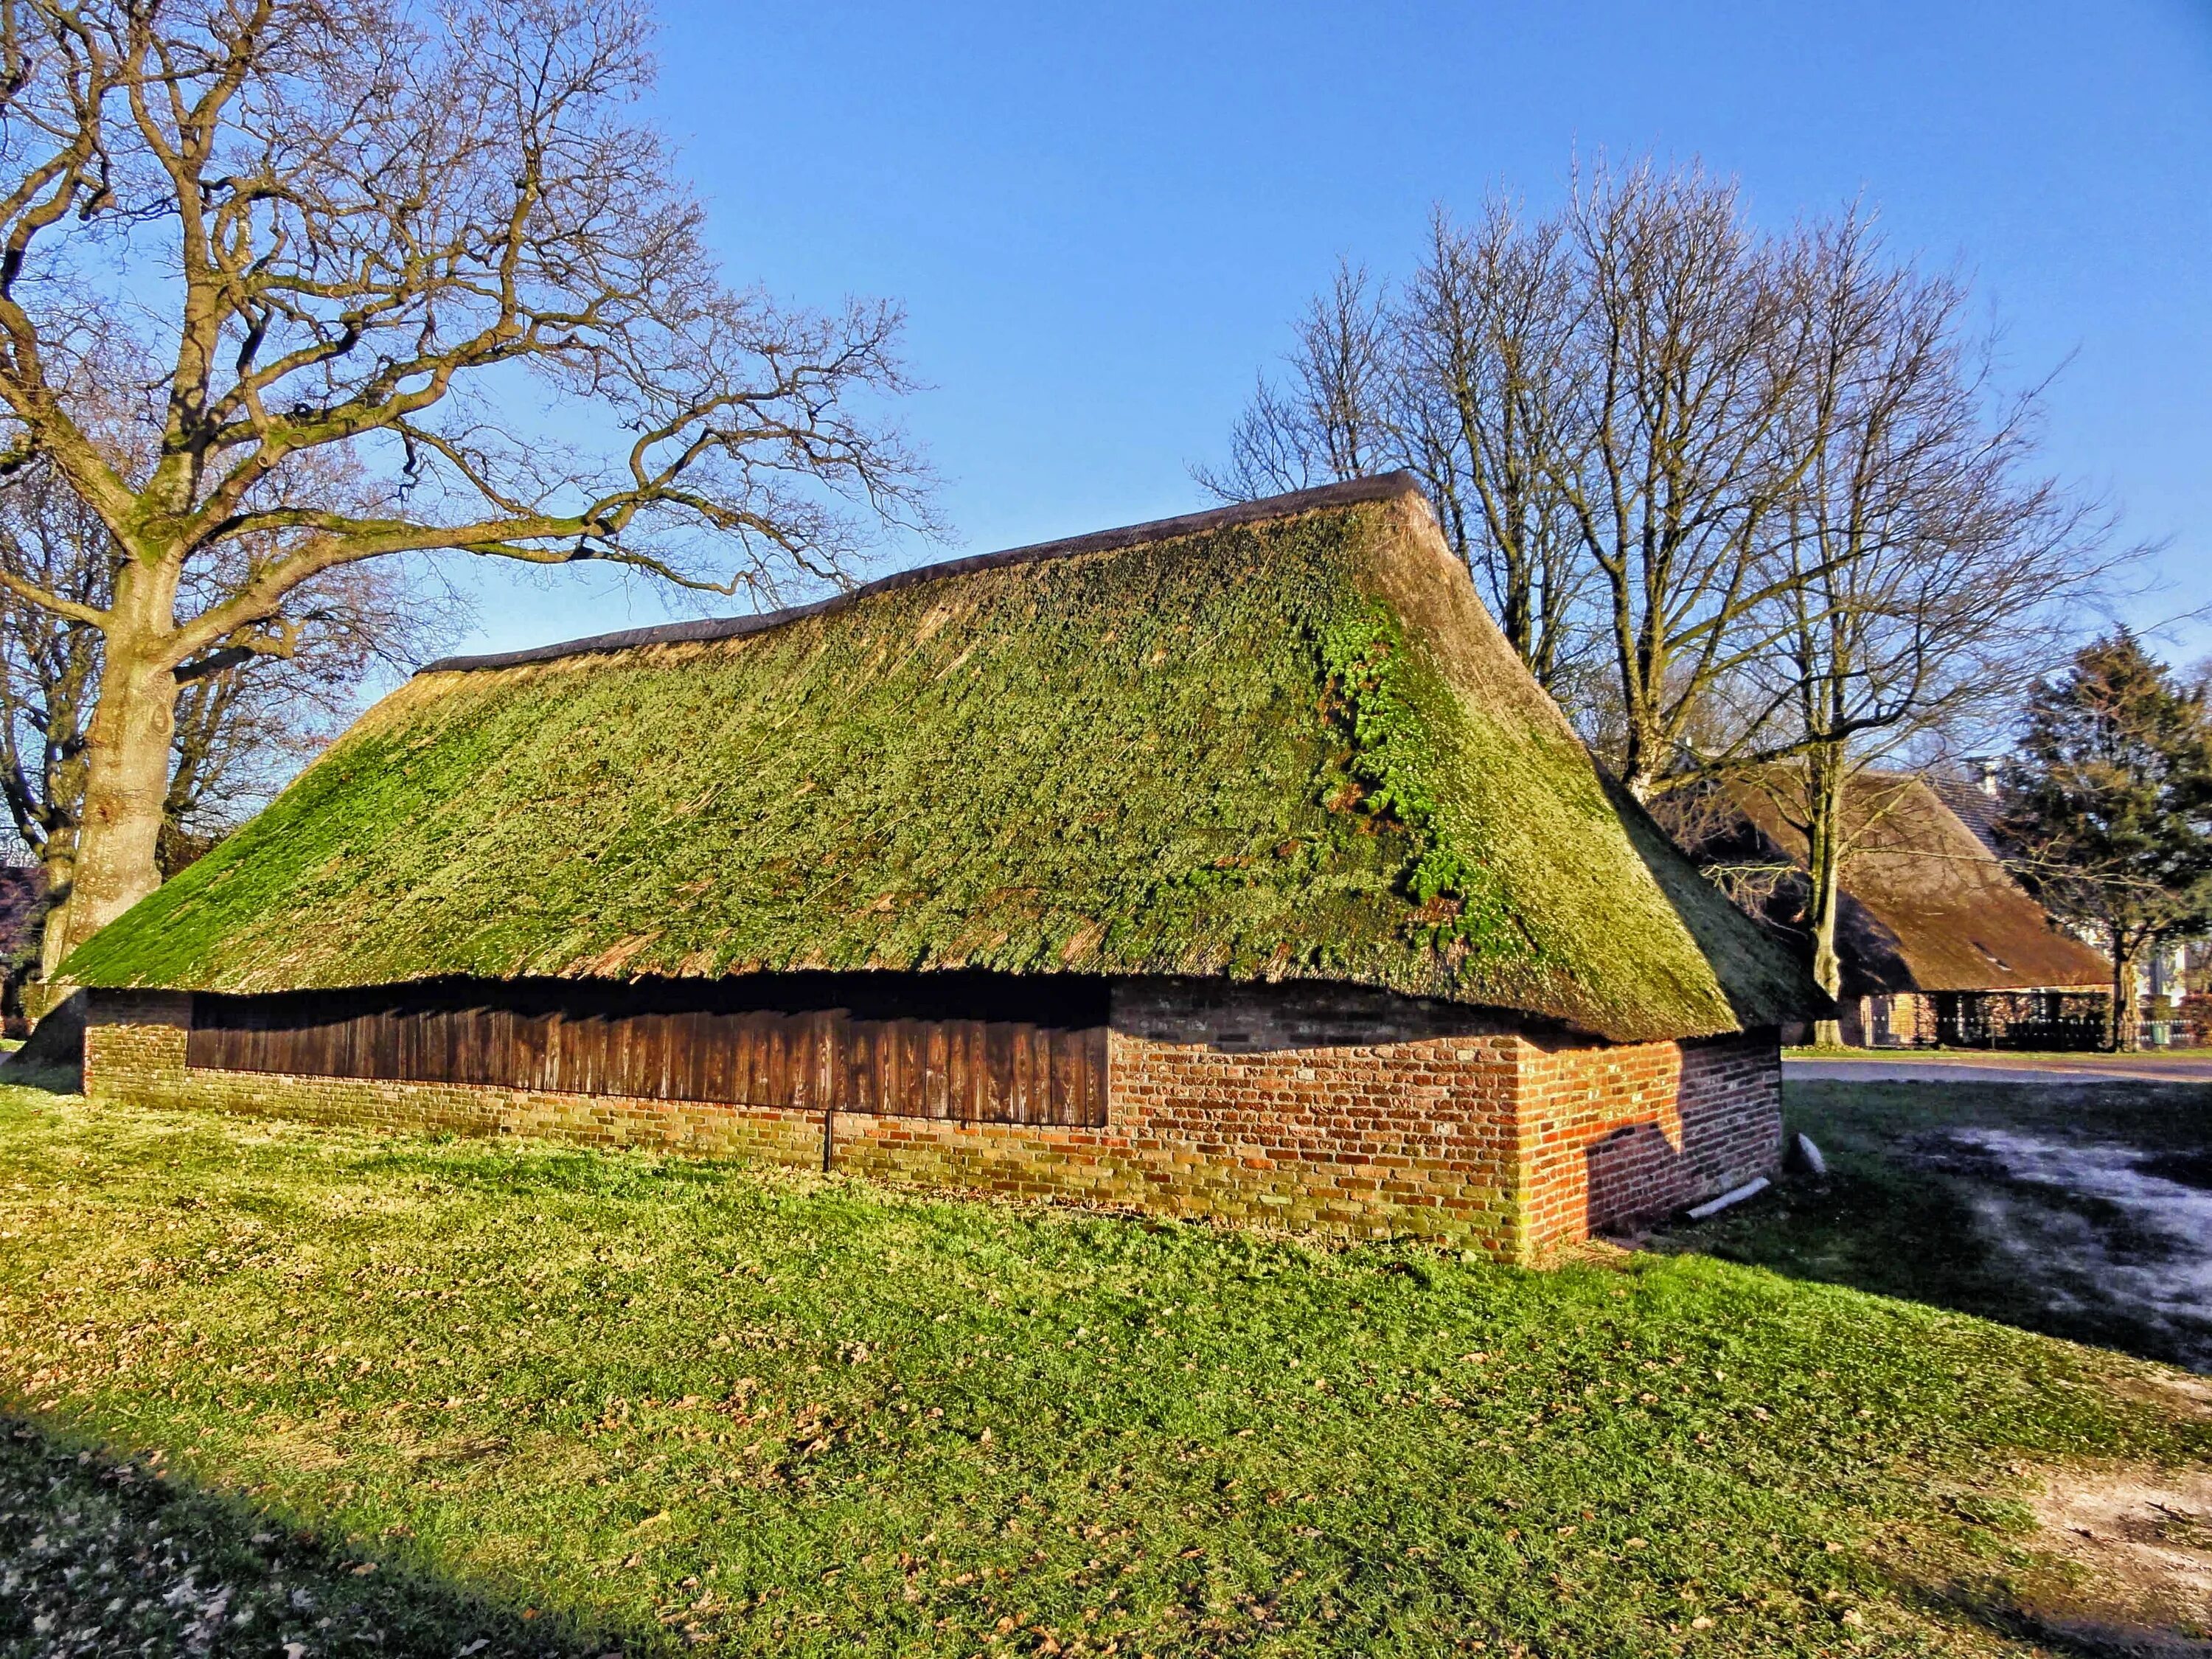 Соломенная крыша. Домик с соломенной крышей. Голландский дом с соломенной крышей. Соломенные крыши в Нидерландах.